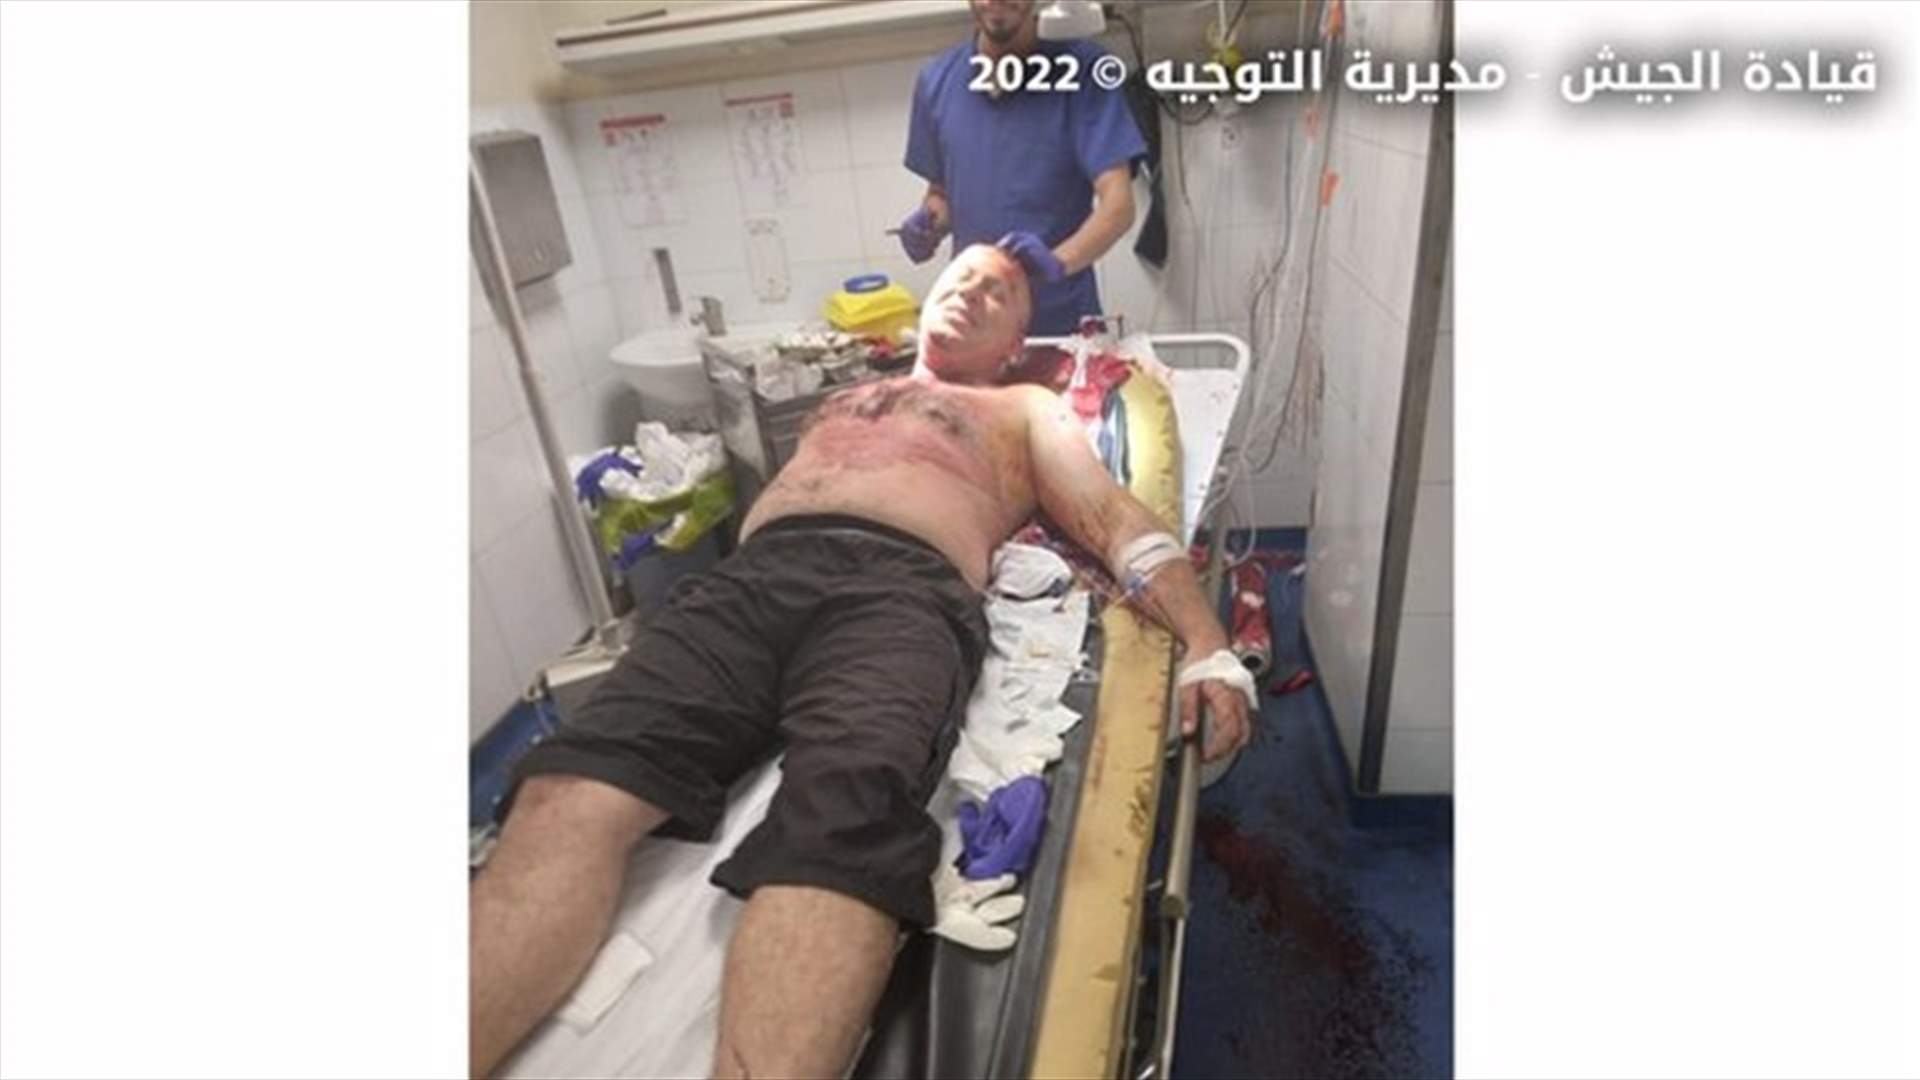 الجيش يشرح تفاصيل ما حصل خلال الاعتداء على مركزه في طرابلس...